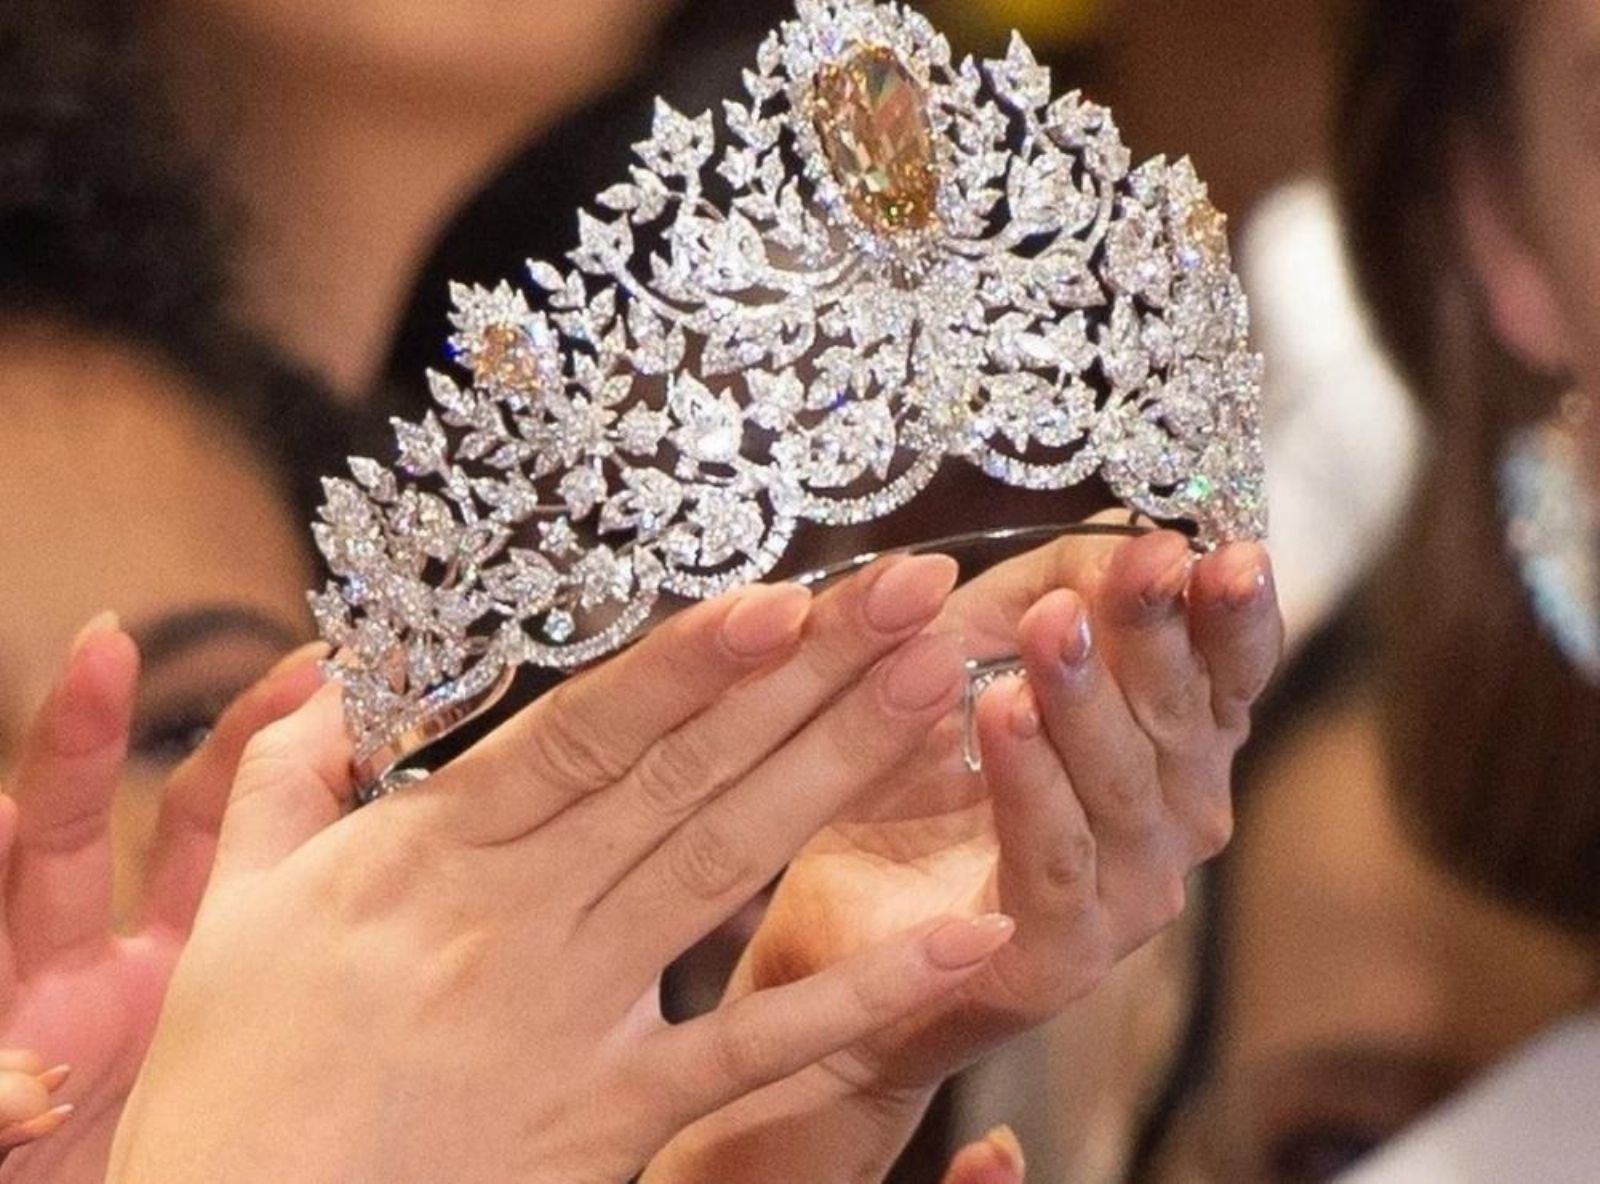 ملكة جمال اليونان تقرر مقاطعة المسابقة في "إسرائيل"